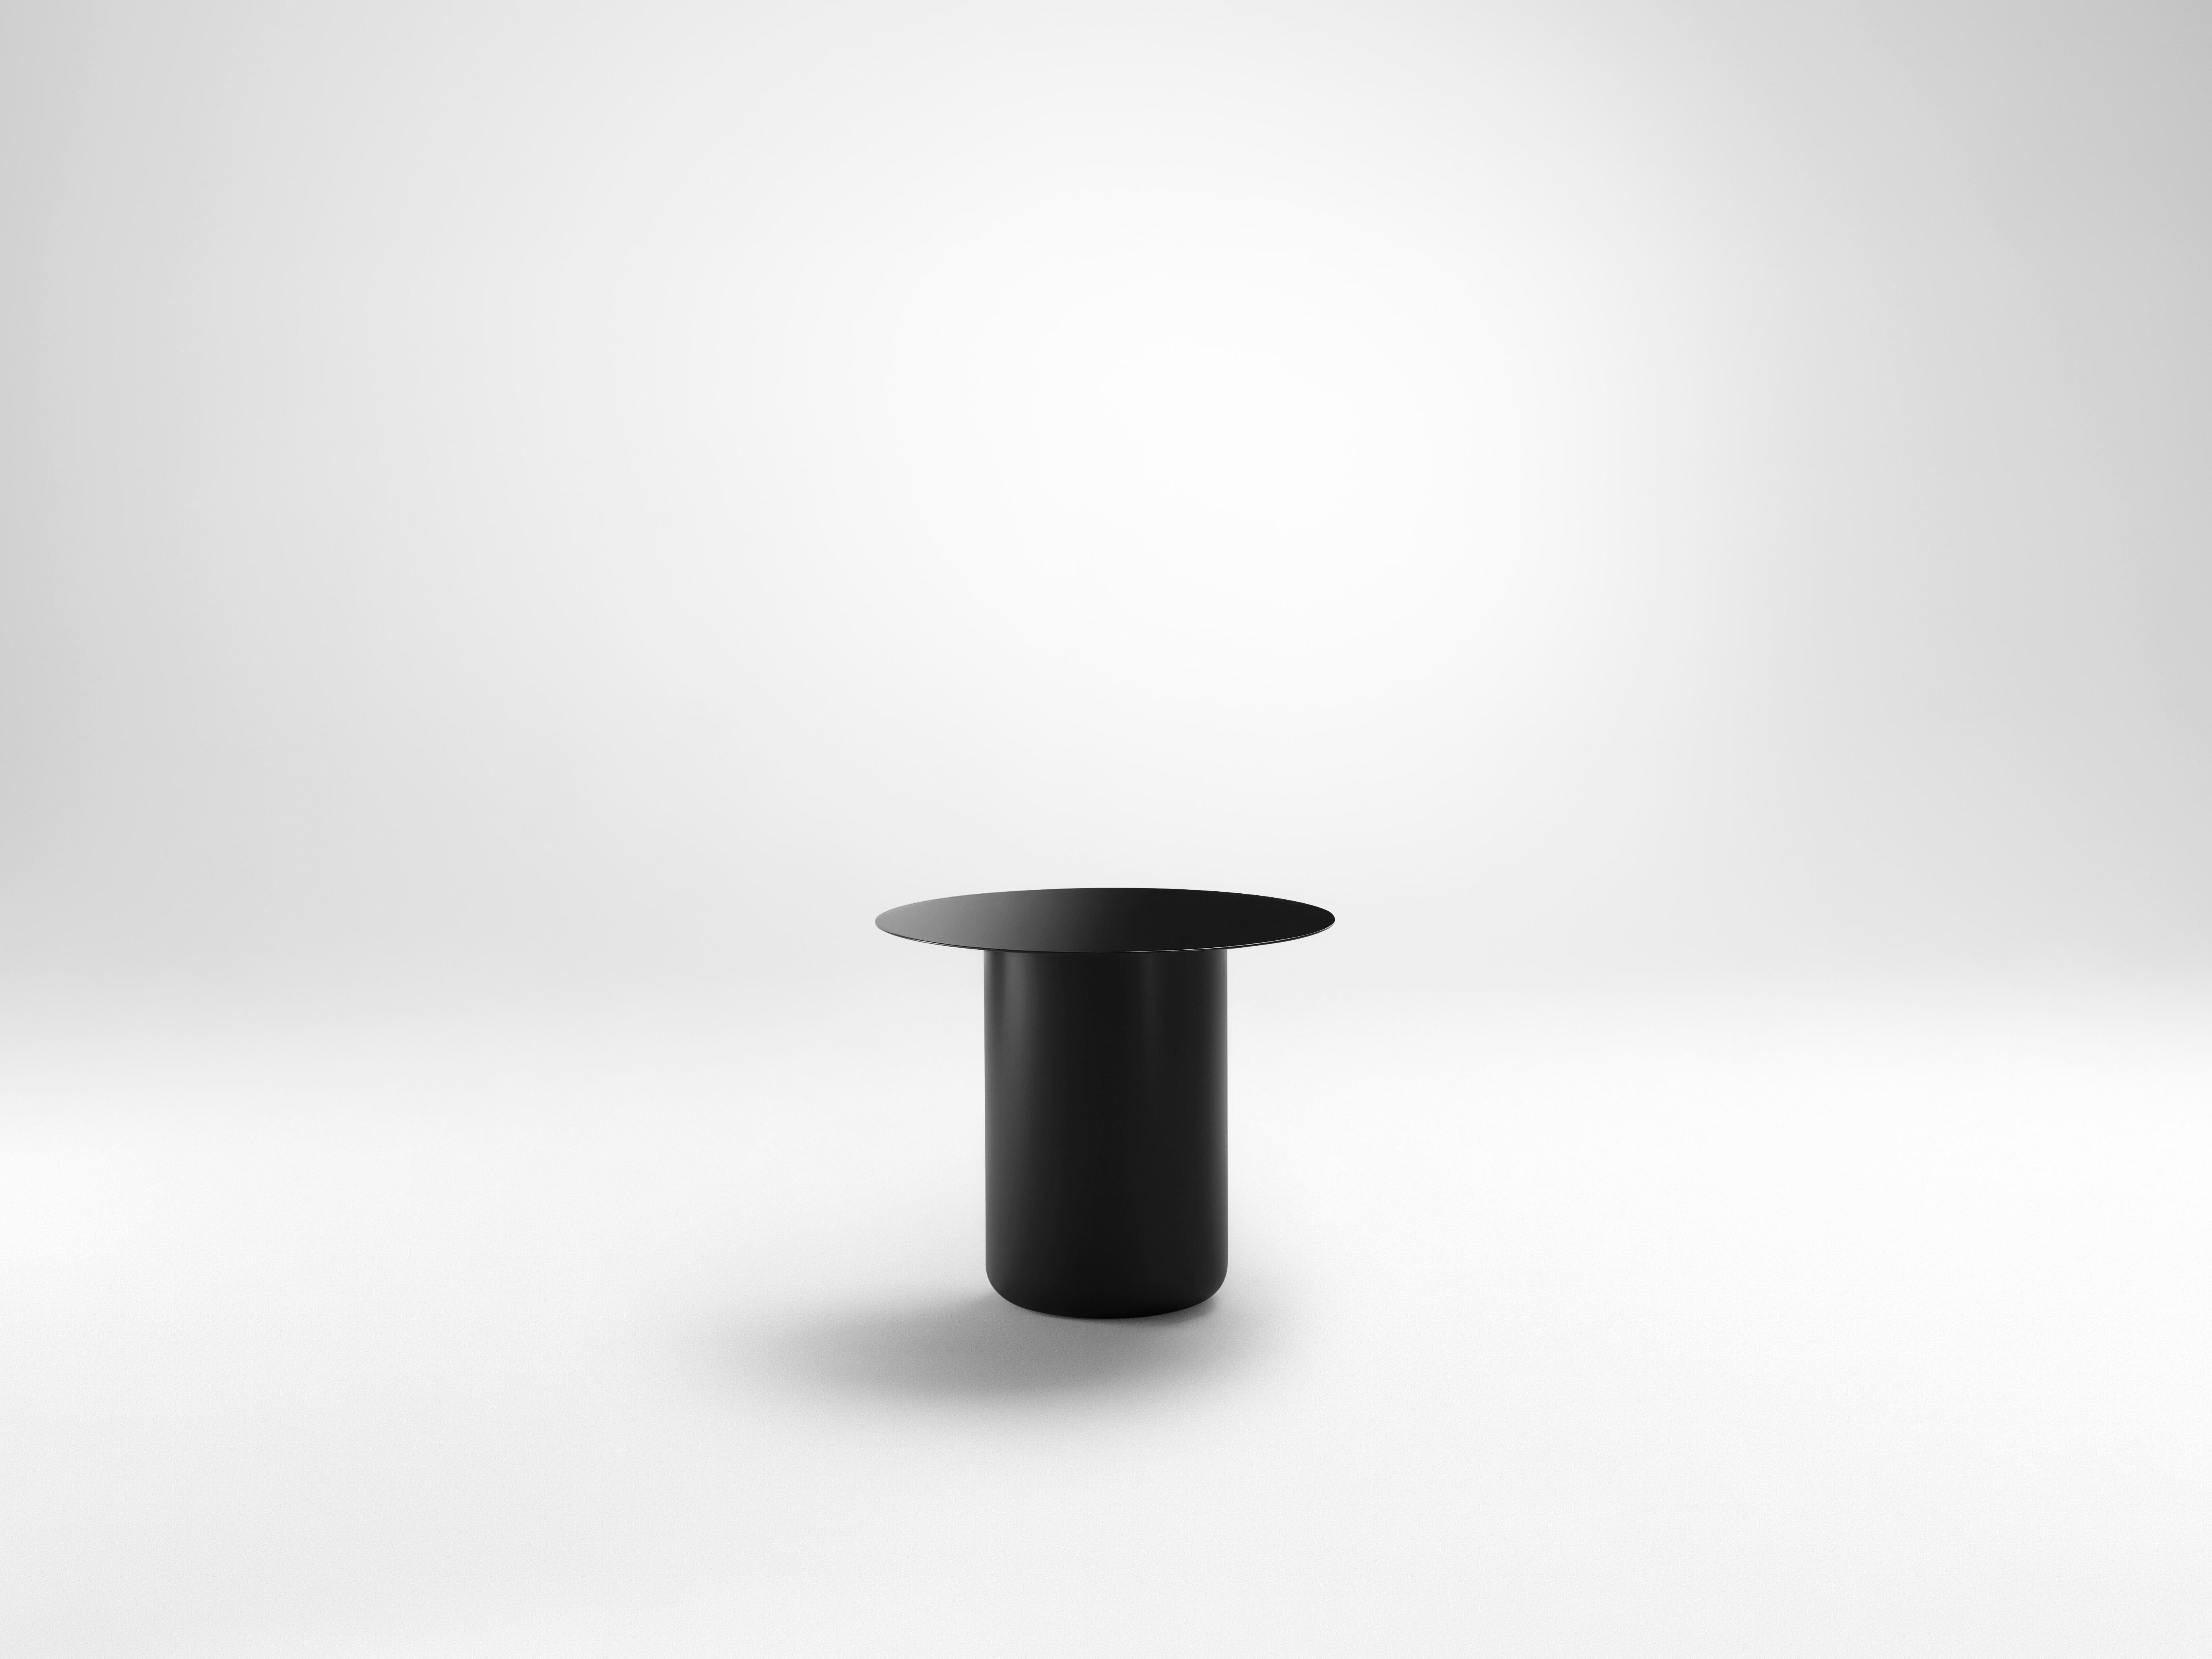 Schwarzer Tisch 01 von Coco Flip
Abmessungen: T 48 x B 48 x H 32 / 36 / 40 / 42 cm
MATERIALIEN: Baustahl, pulverbeschichtet mit Zinkgrundierung. 
Gewicht: 12 kg

Coco Flip ist ein Studio für Möbel- und Beleuchtungsdesign in Melbourne, das von uns,